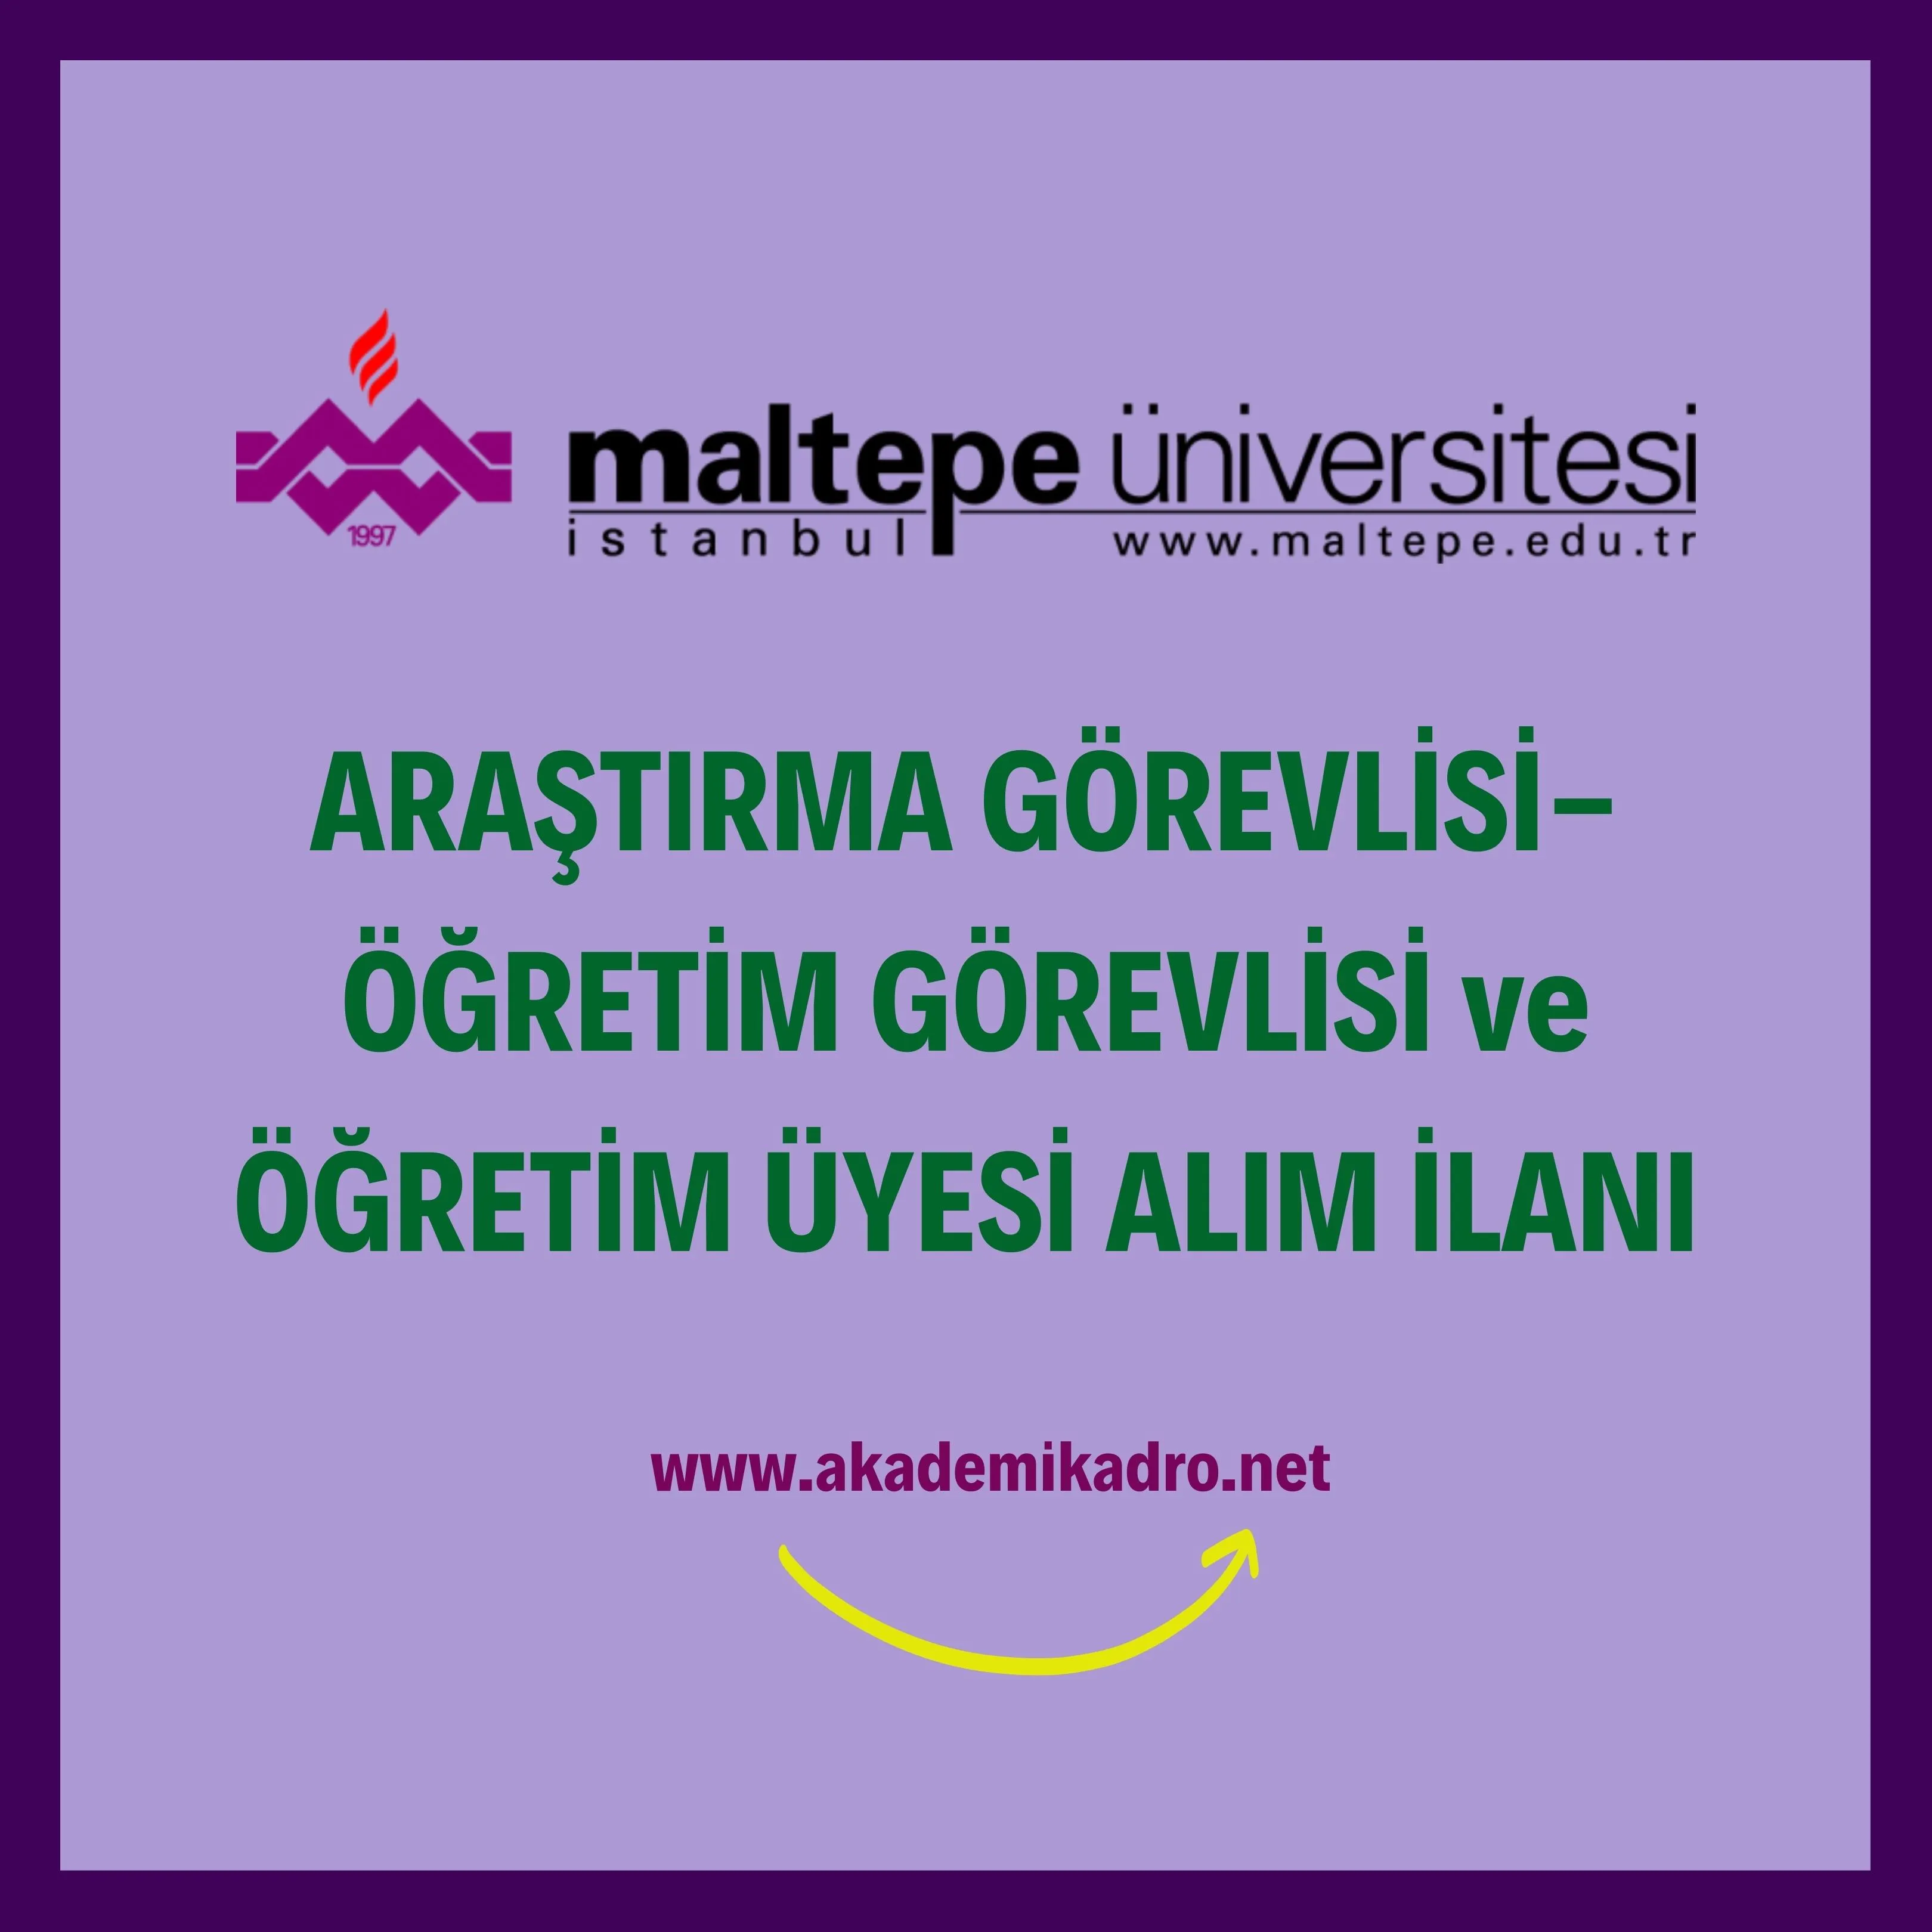 Maltepe Üniversitesi 2 Öğretim görevlisi, 7 Araştırma görevlisi ve 29 Öğretim üyesi alacak.